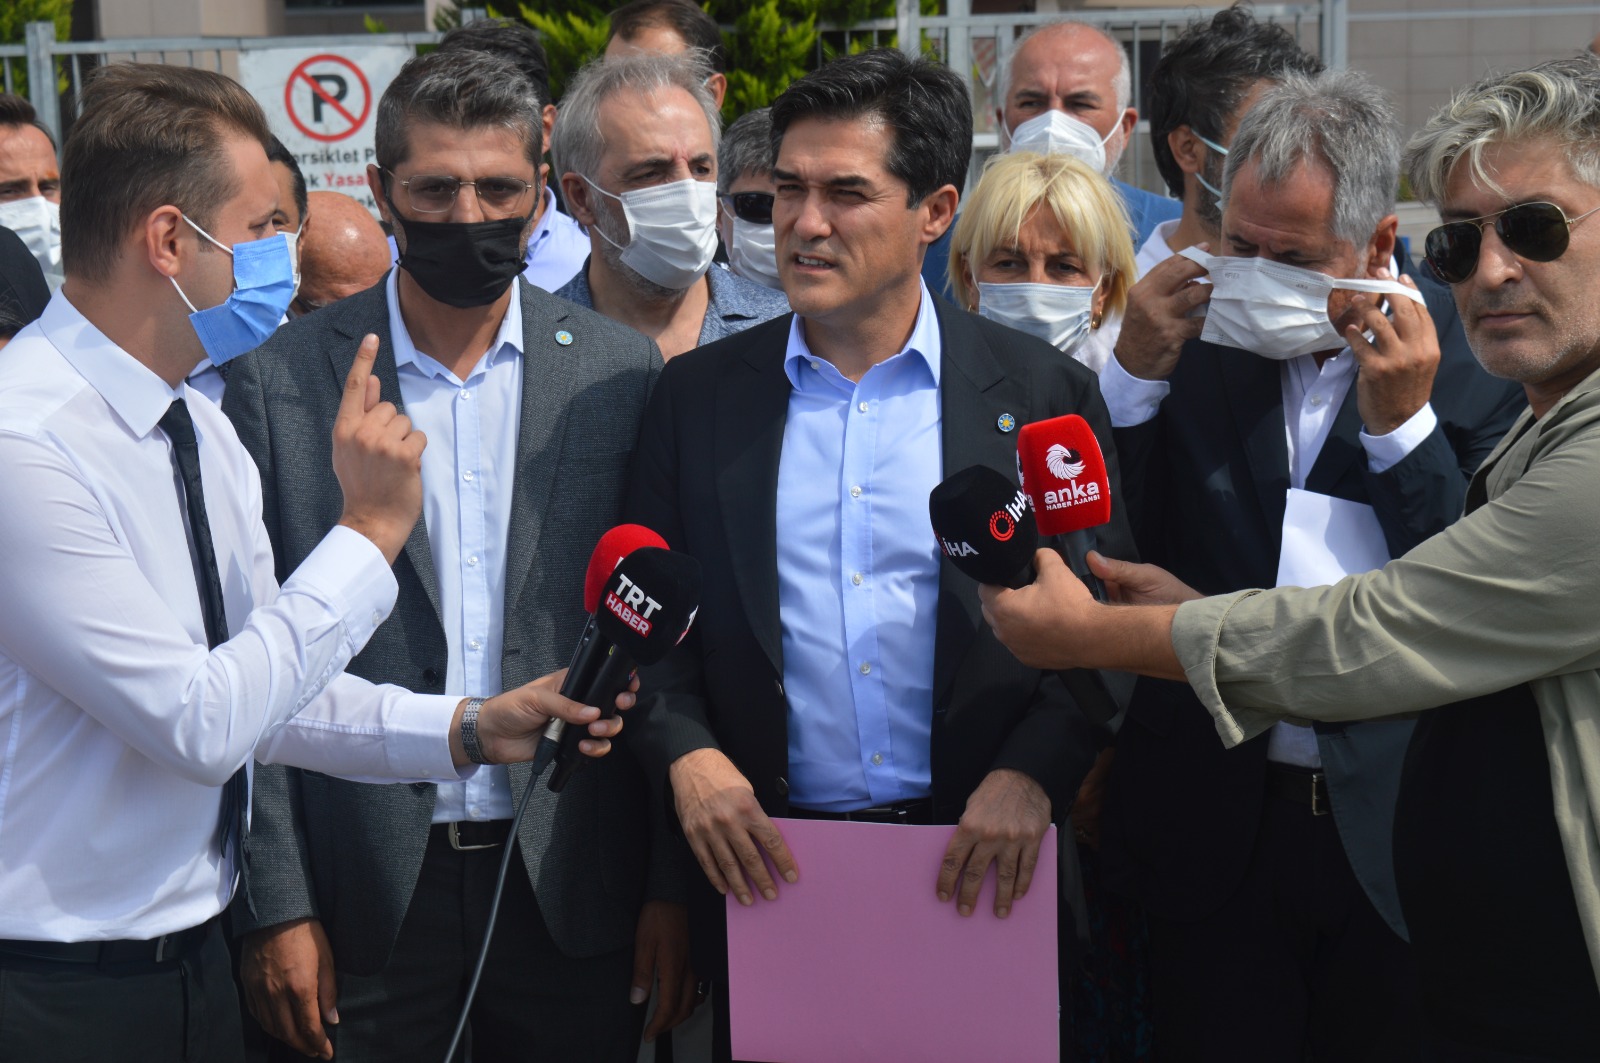 Düzgün Partililerden AKP'li Cahit Özkan hakkında cürüm duyurusu: Bunlara pabuç bırakacak değiliz